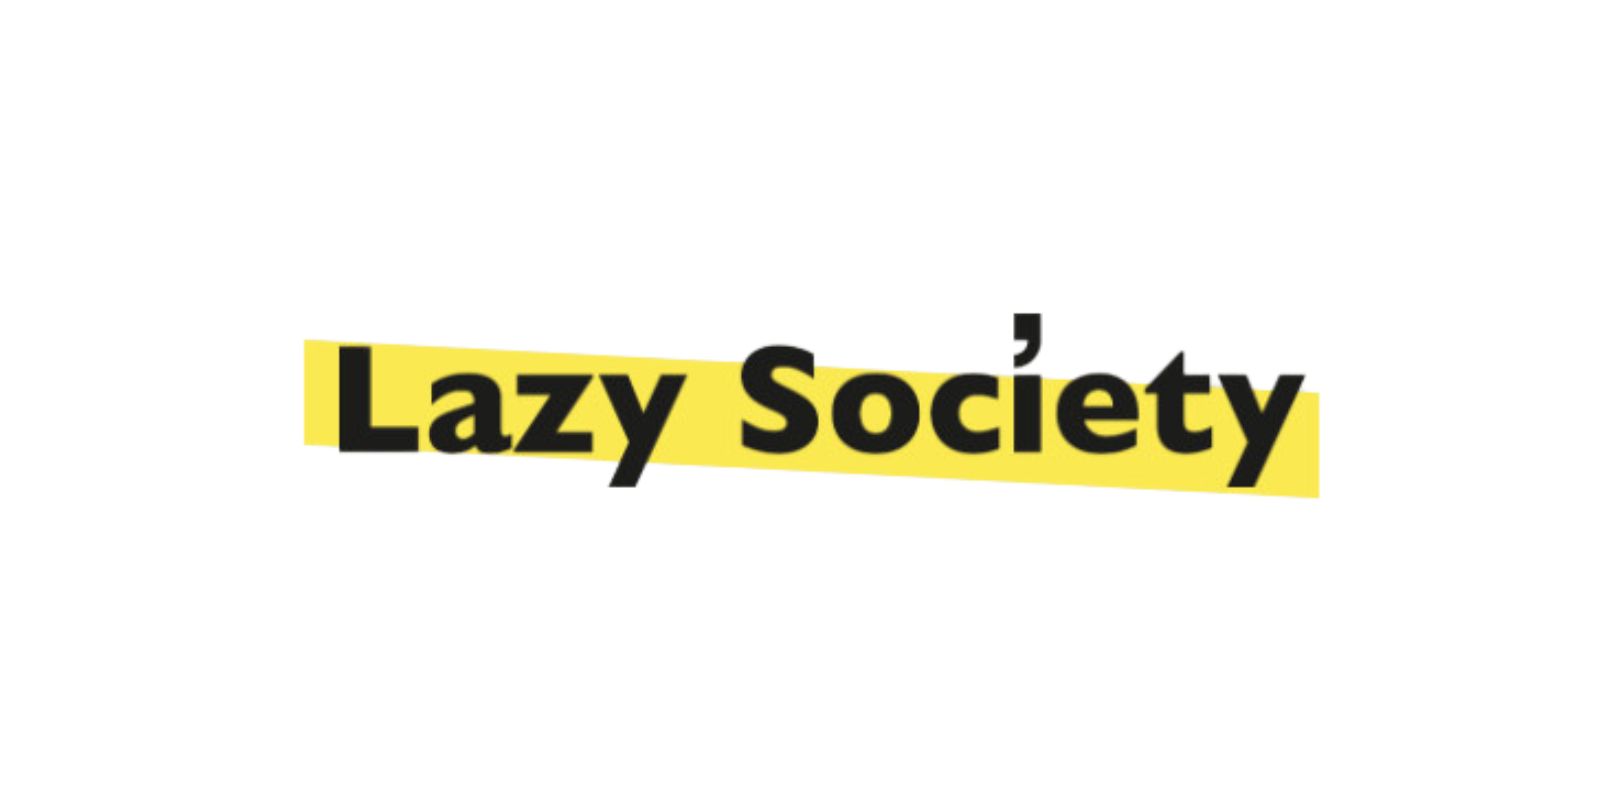 LAZY SOCIETY